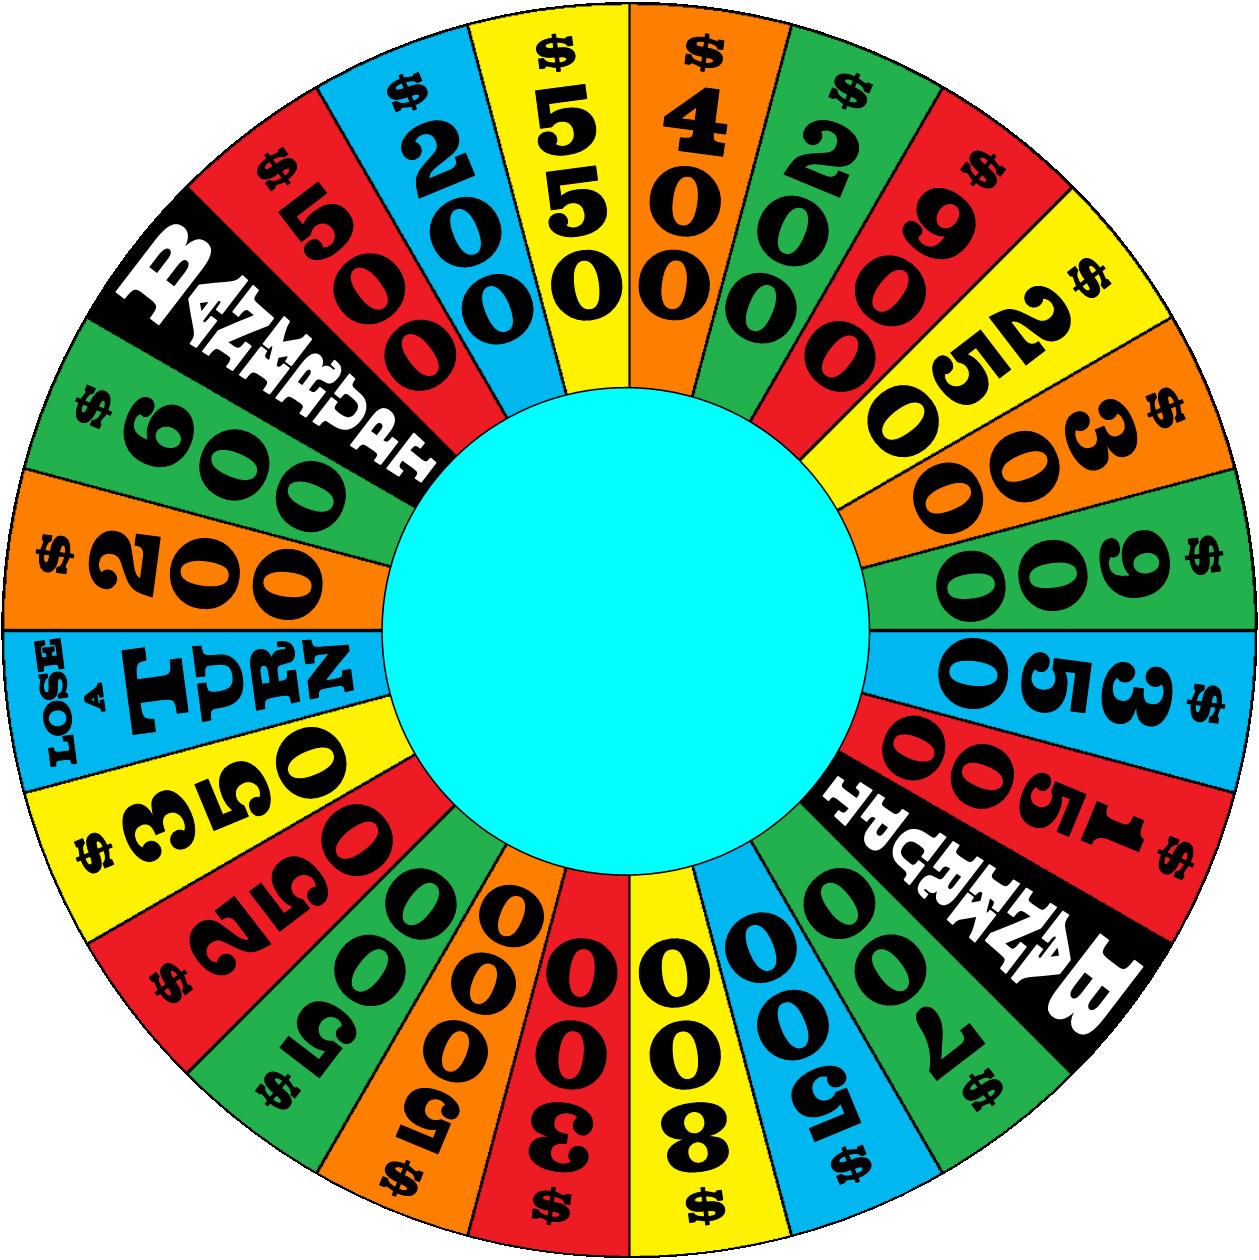 Wheel of fortune remix. Wheel of Fortune игра. Wheel of Fortune телепередача. Wheel of Fortune колесо. Wheel of Fortune (USA)игра.